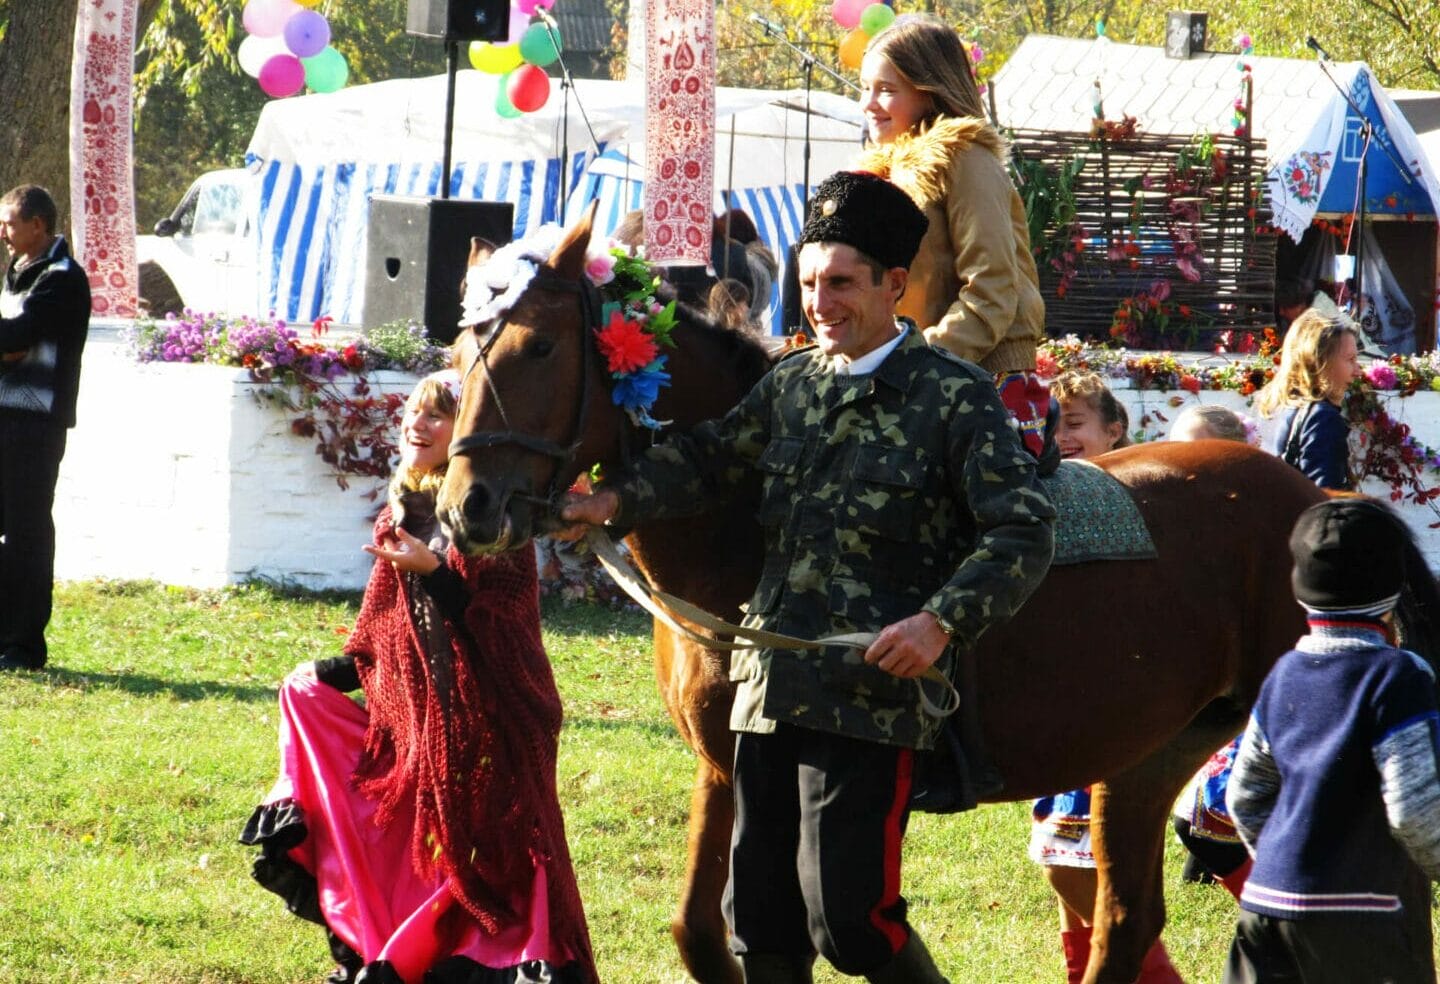 Pokrova Fair event in Lypova Dolyna / Photo by Rostyslav Savchenko